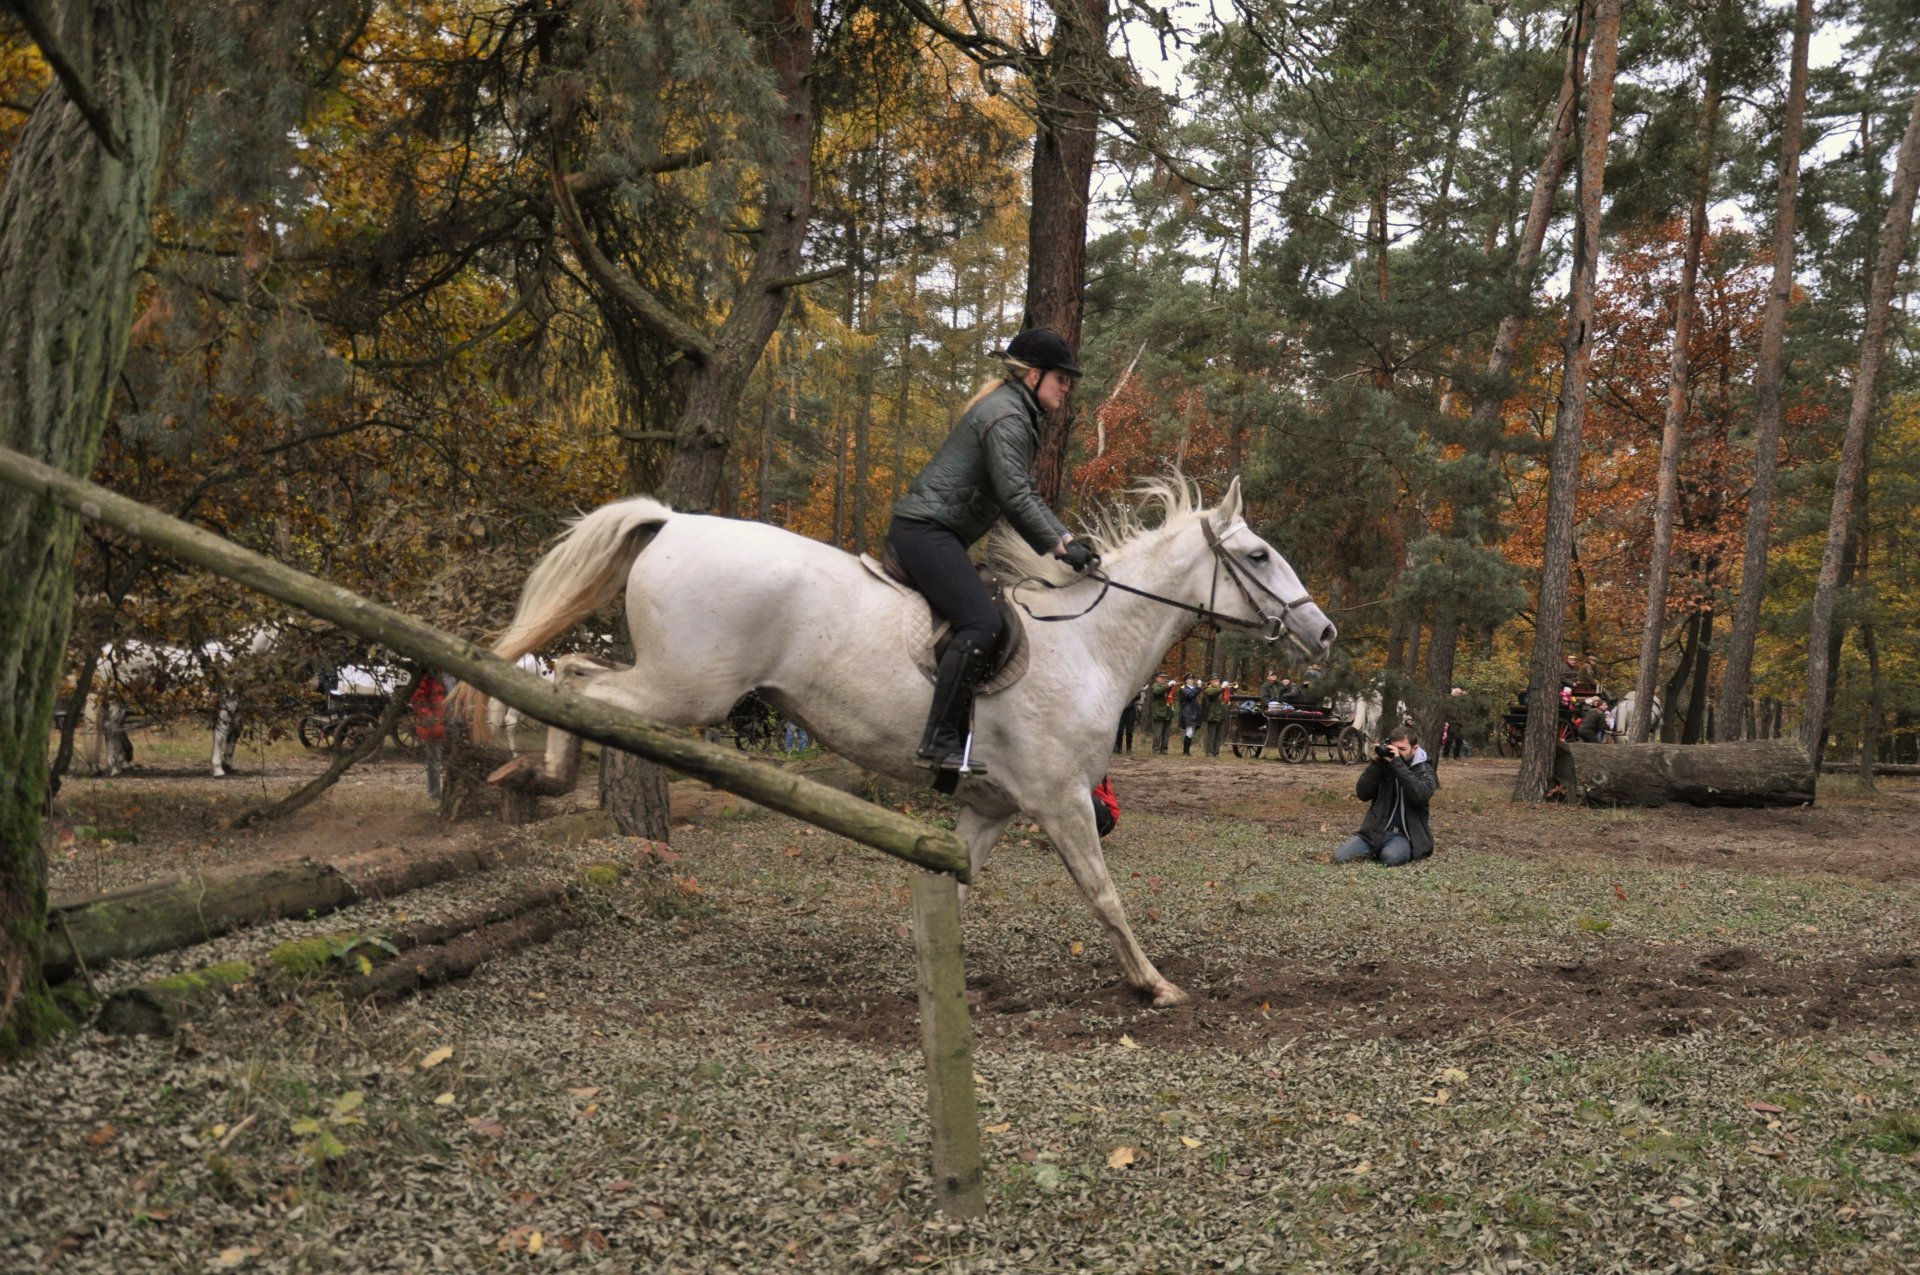 Jezdci jedoucí v zástupu musí dodržovat minimální rozestup 2,5 metru tak, aby mezi ušima svého koně viděli kořen ocasu koně před sebou